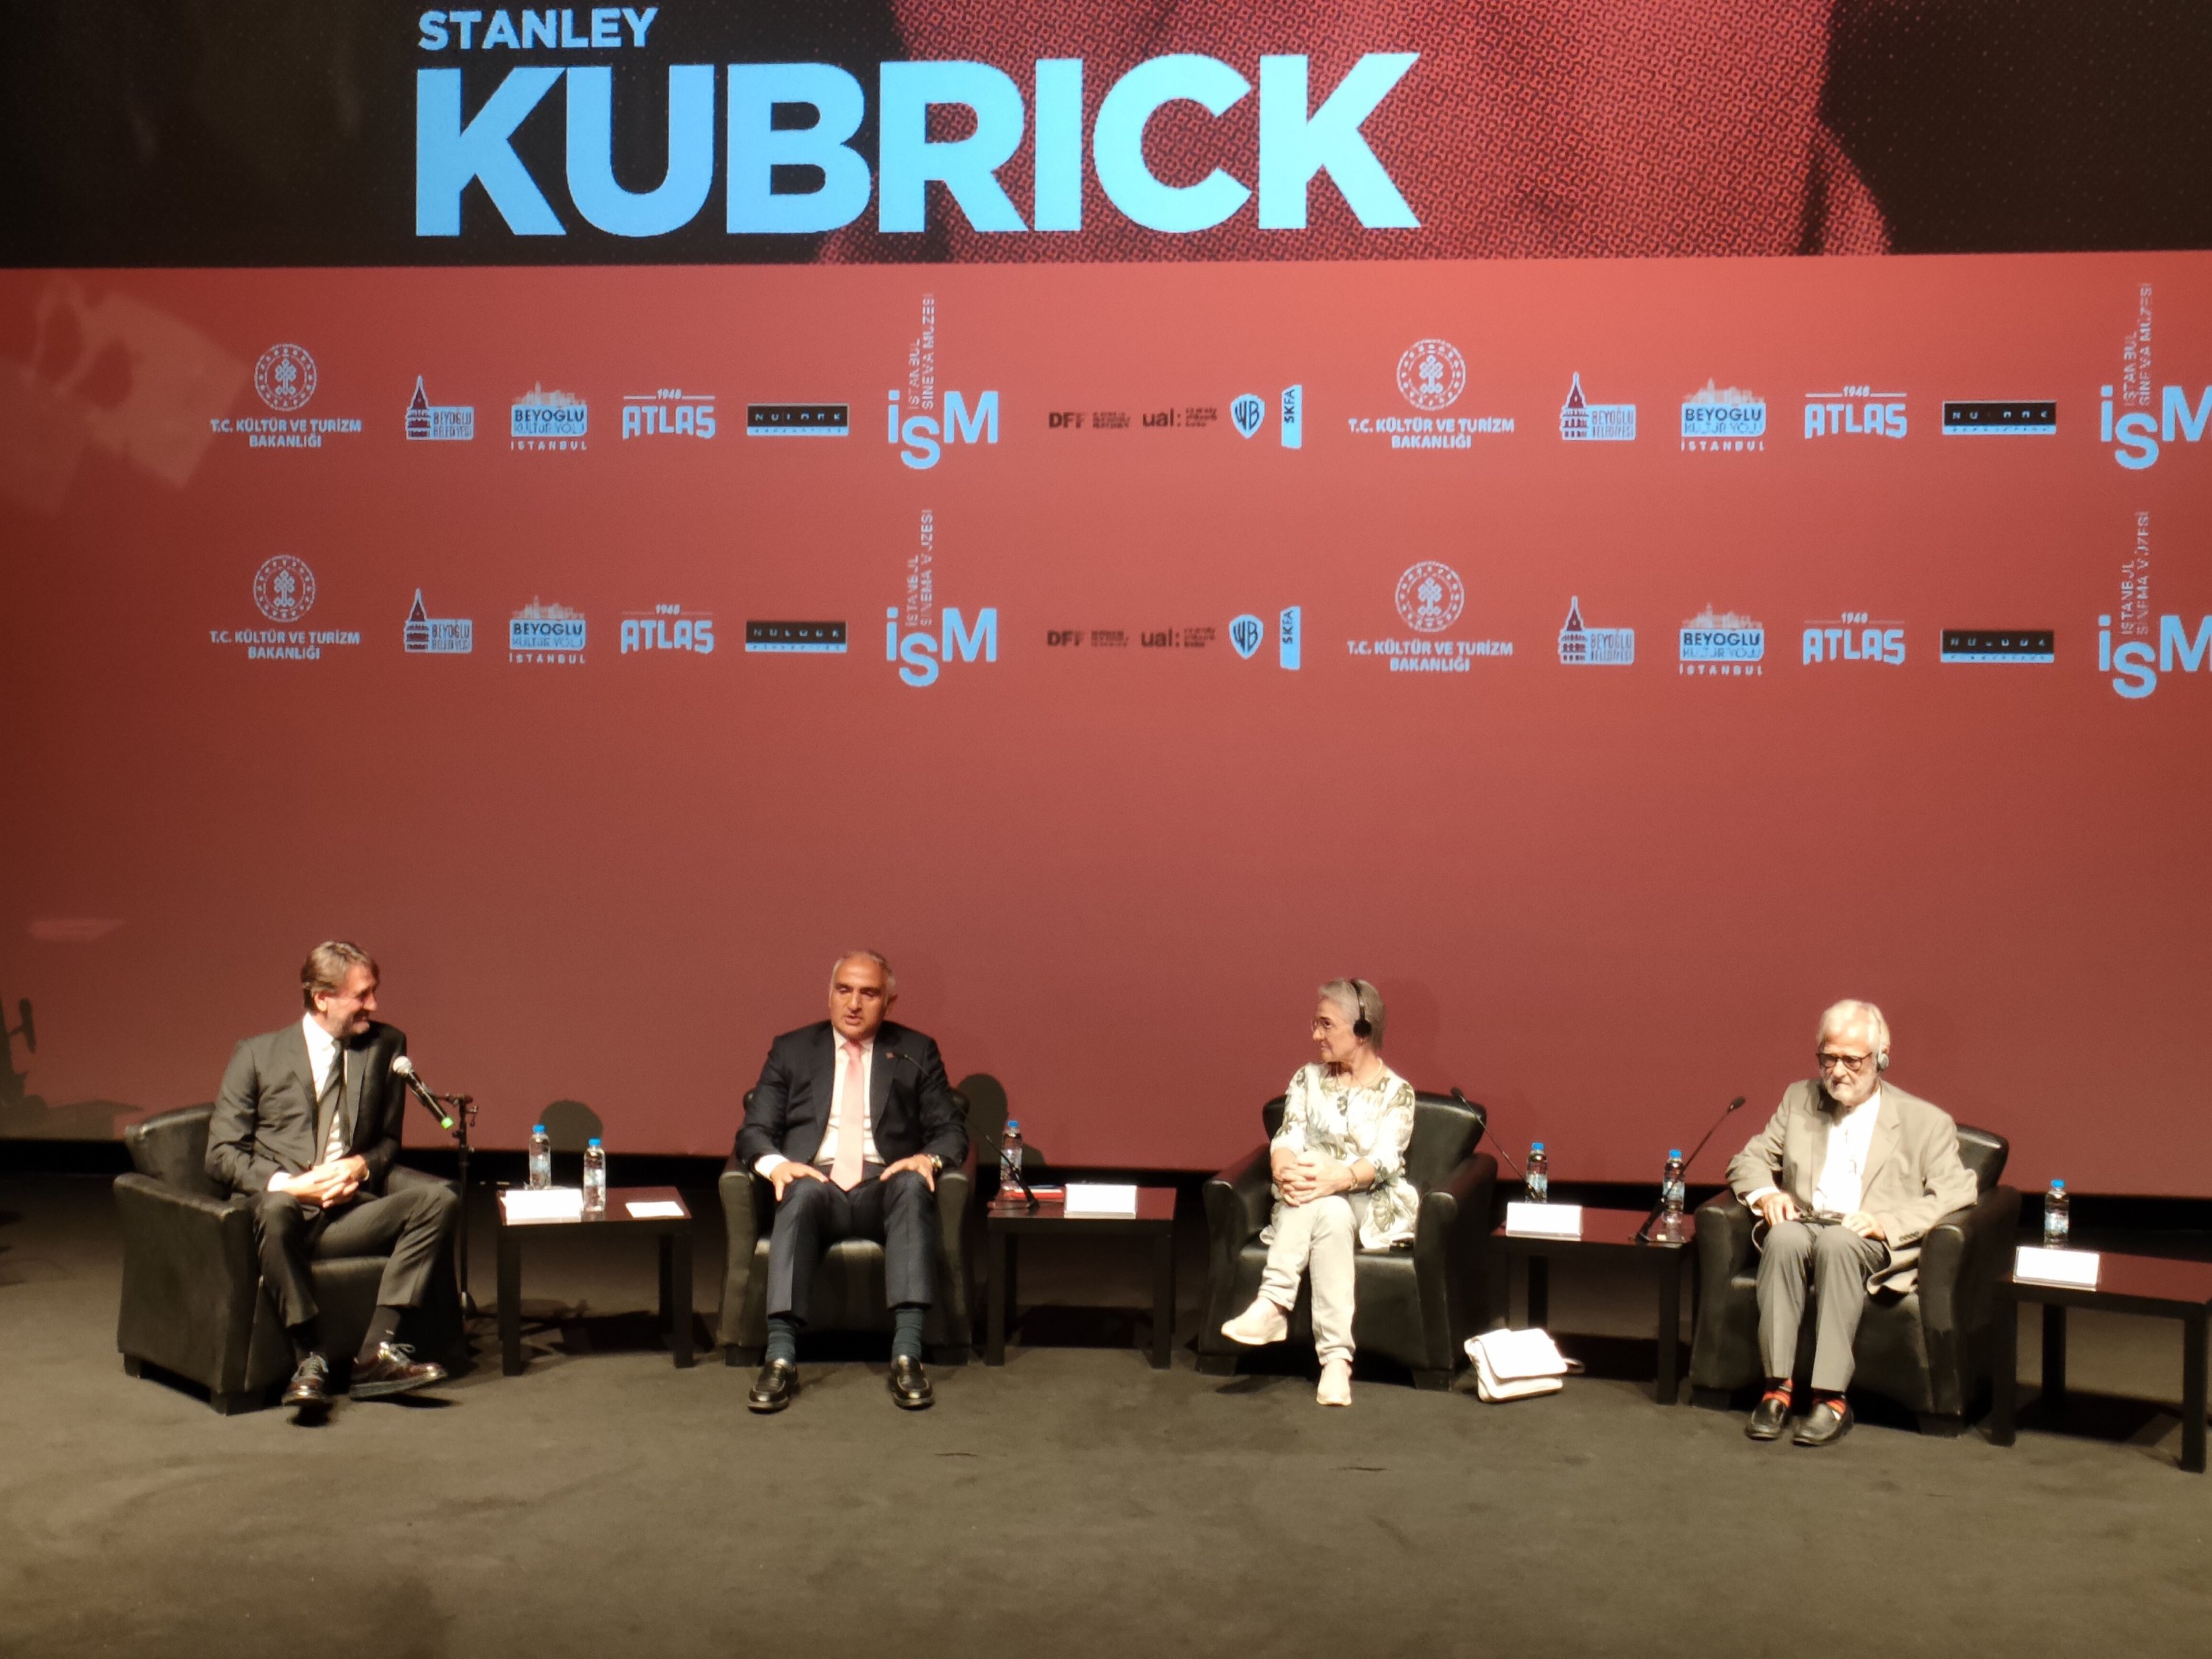 (kiri) Menteri Kebudayaan dan Pariwisata Mehmet Nuri Ersoy, Katherina Kubrick, dan produser film Stanley Kubrick Jan Harlan pada pertemuan pembukaan pameran Stanley Kubrick, Museum Sinema Istanbul, Türkiye, 30 September 2022. (Foto IHA)